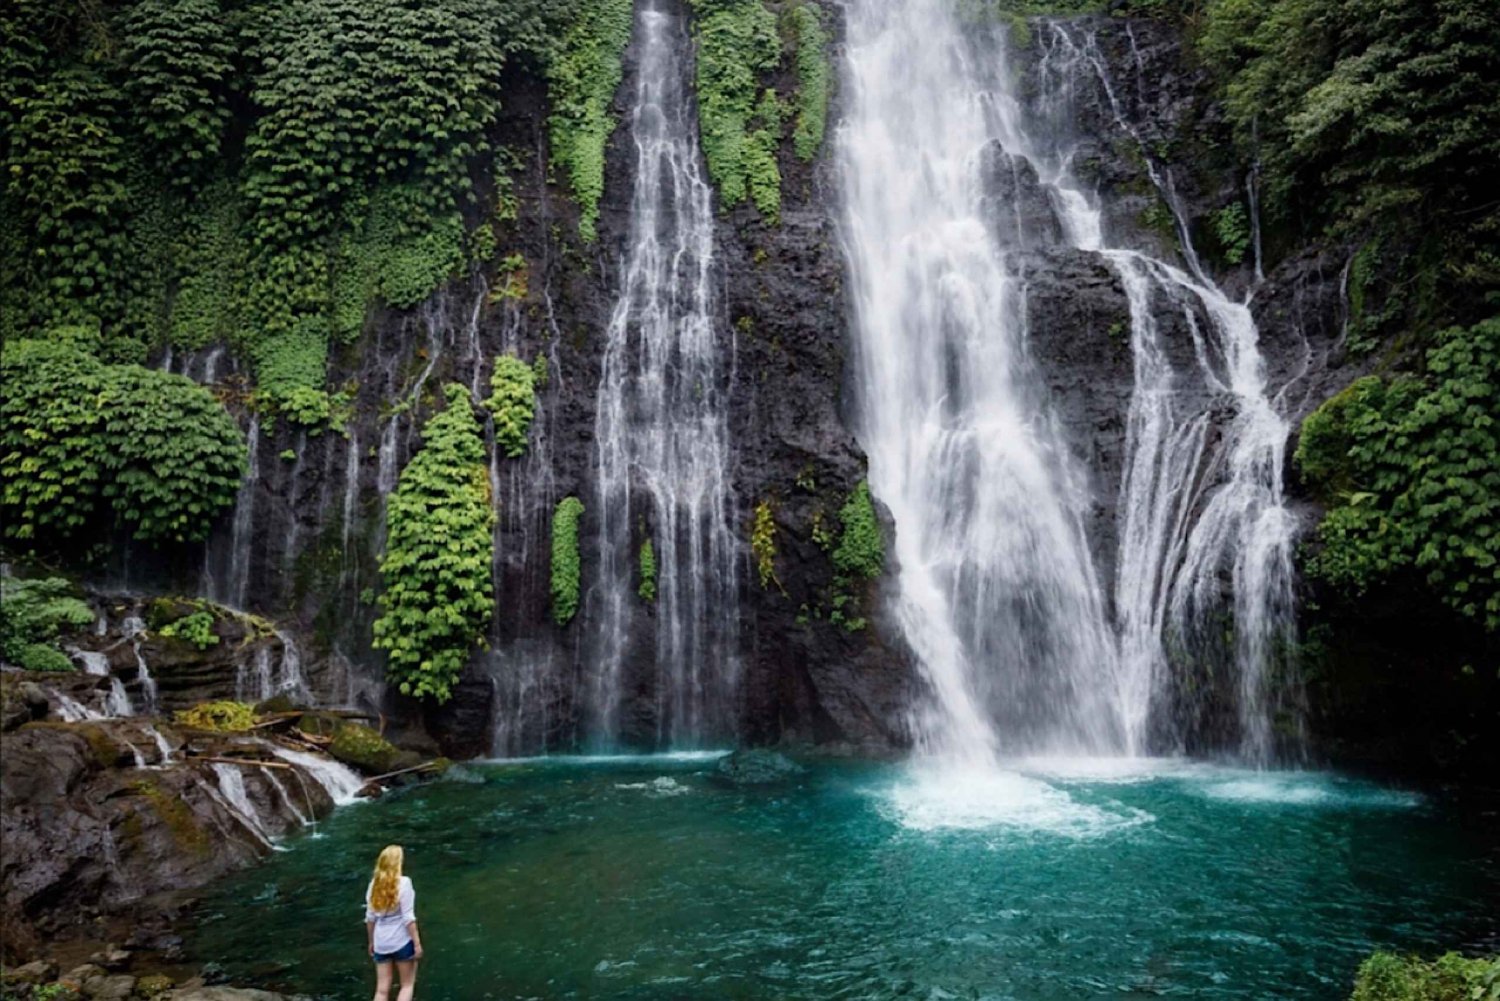 Bali/Munduk: Udforsk tre forskellige vandfald med skjulte perler